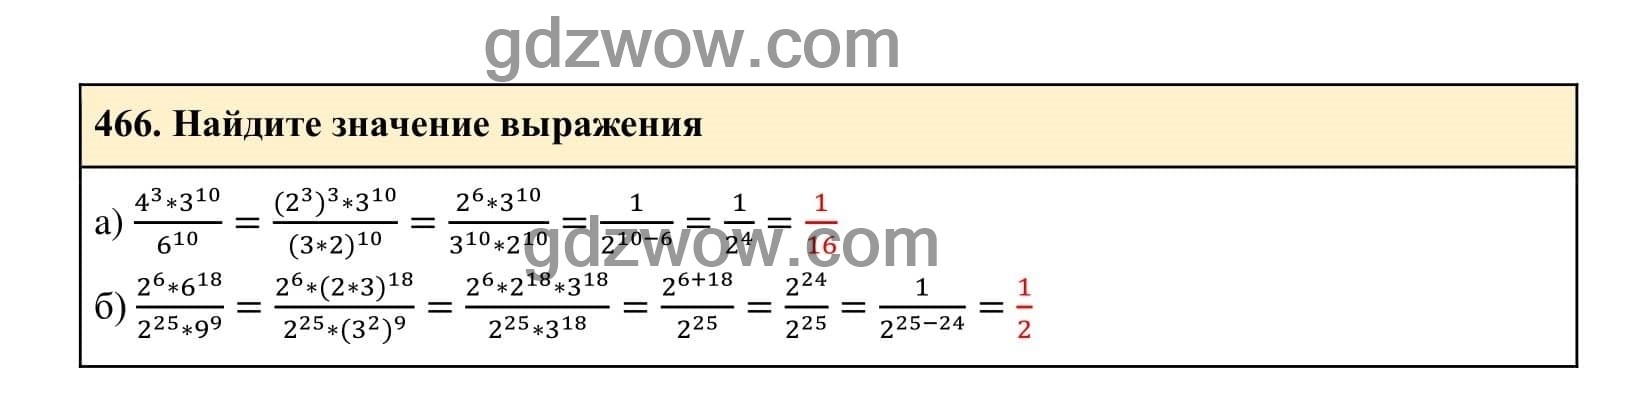 Упражнение 466 - ГДЗ по Алгебре 7 класс Учебник Макарычев (решебник) - GDZwow